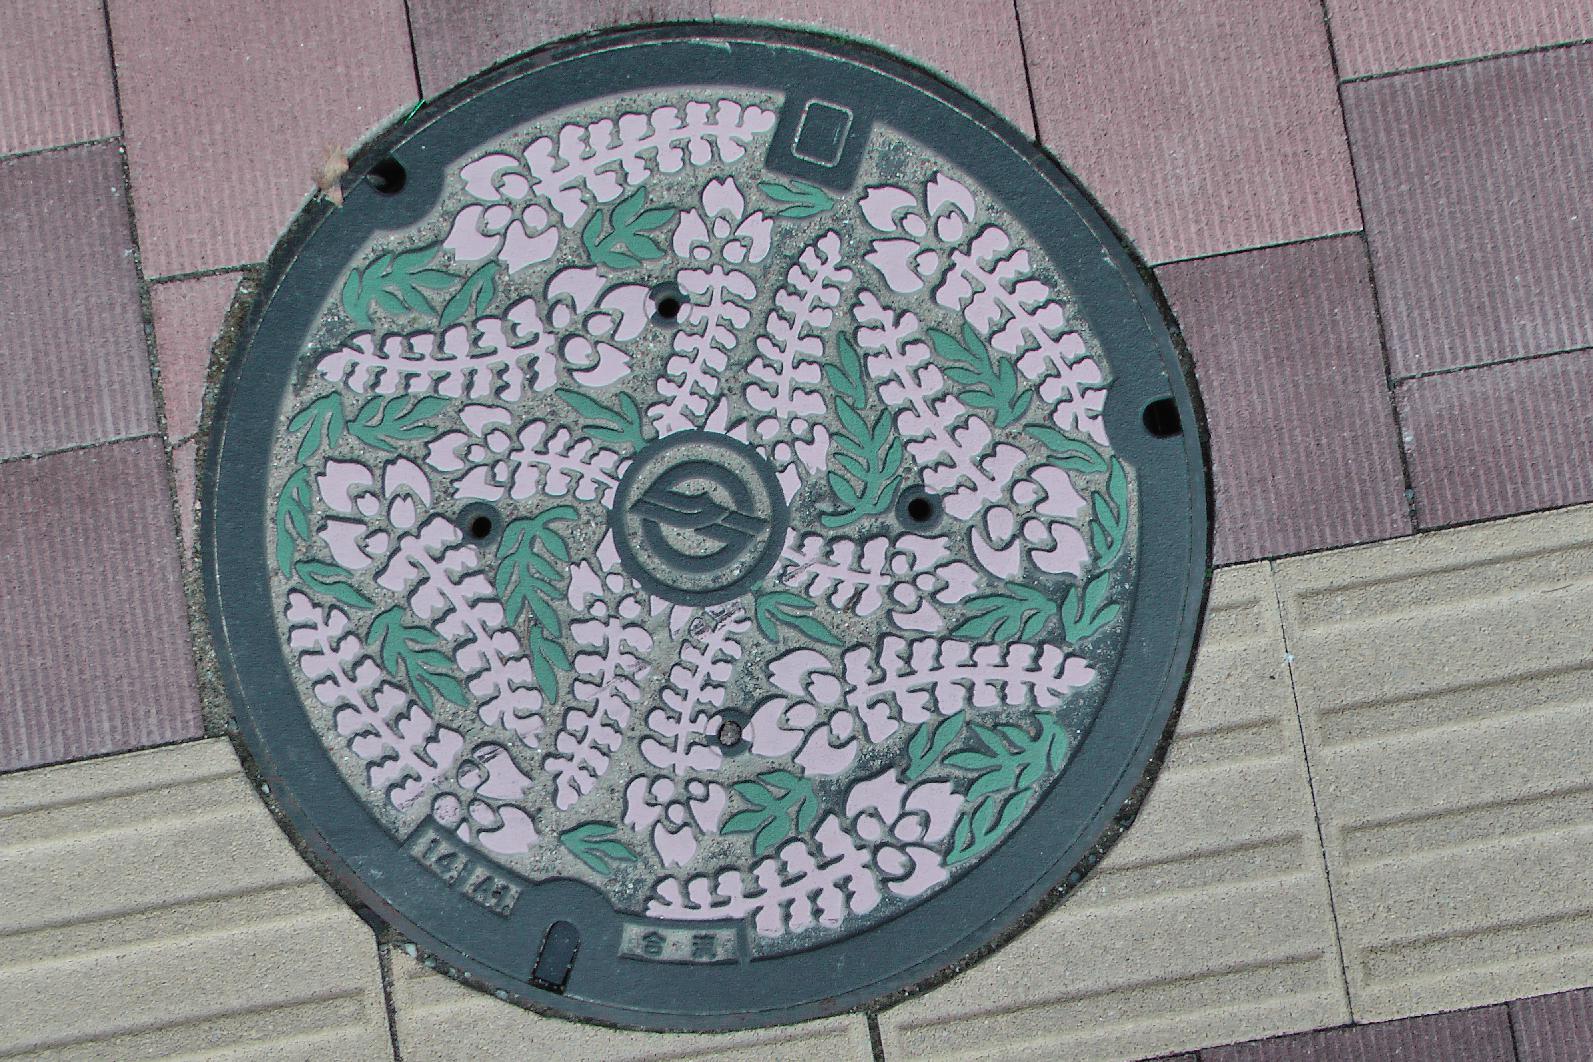 Manhole cover in Kurashiki